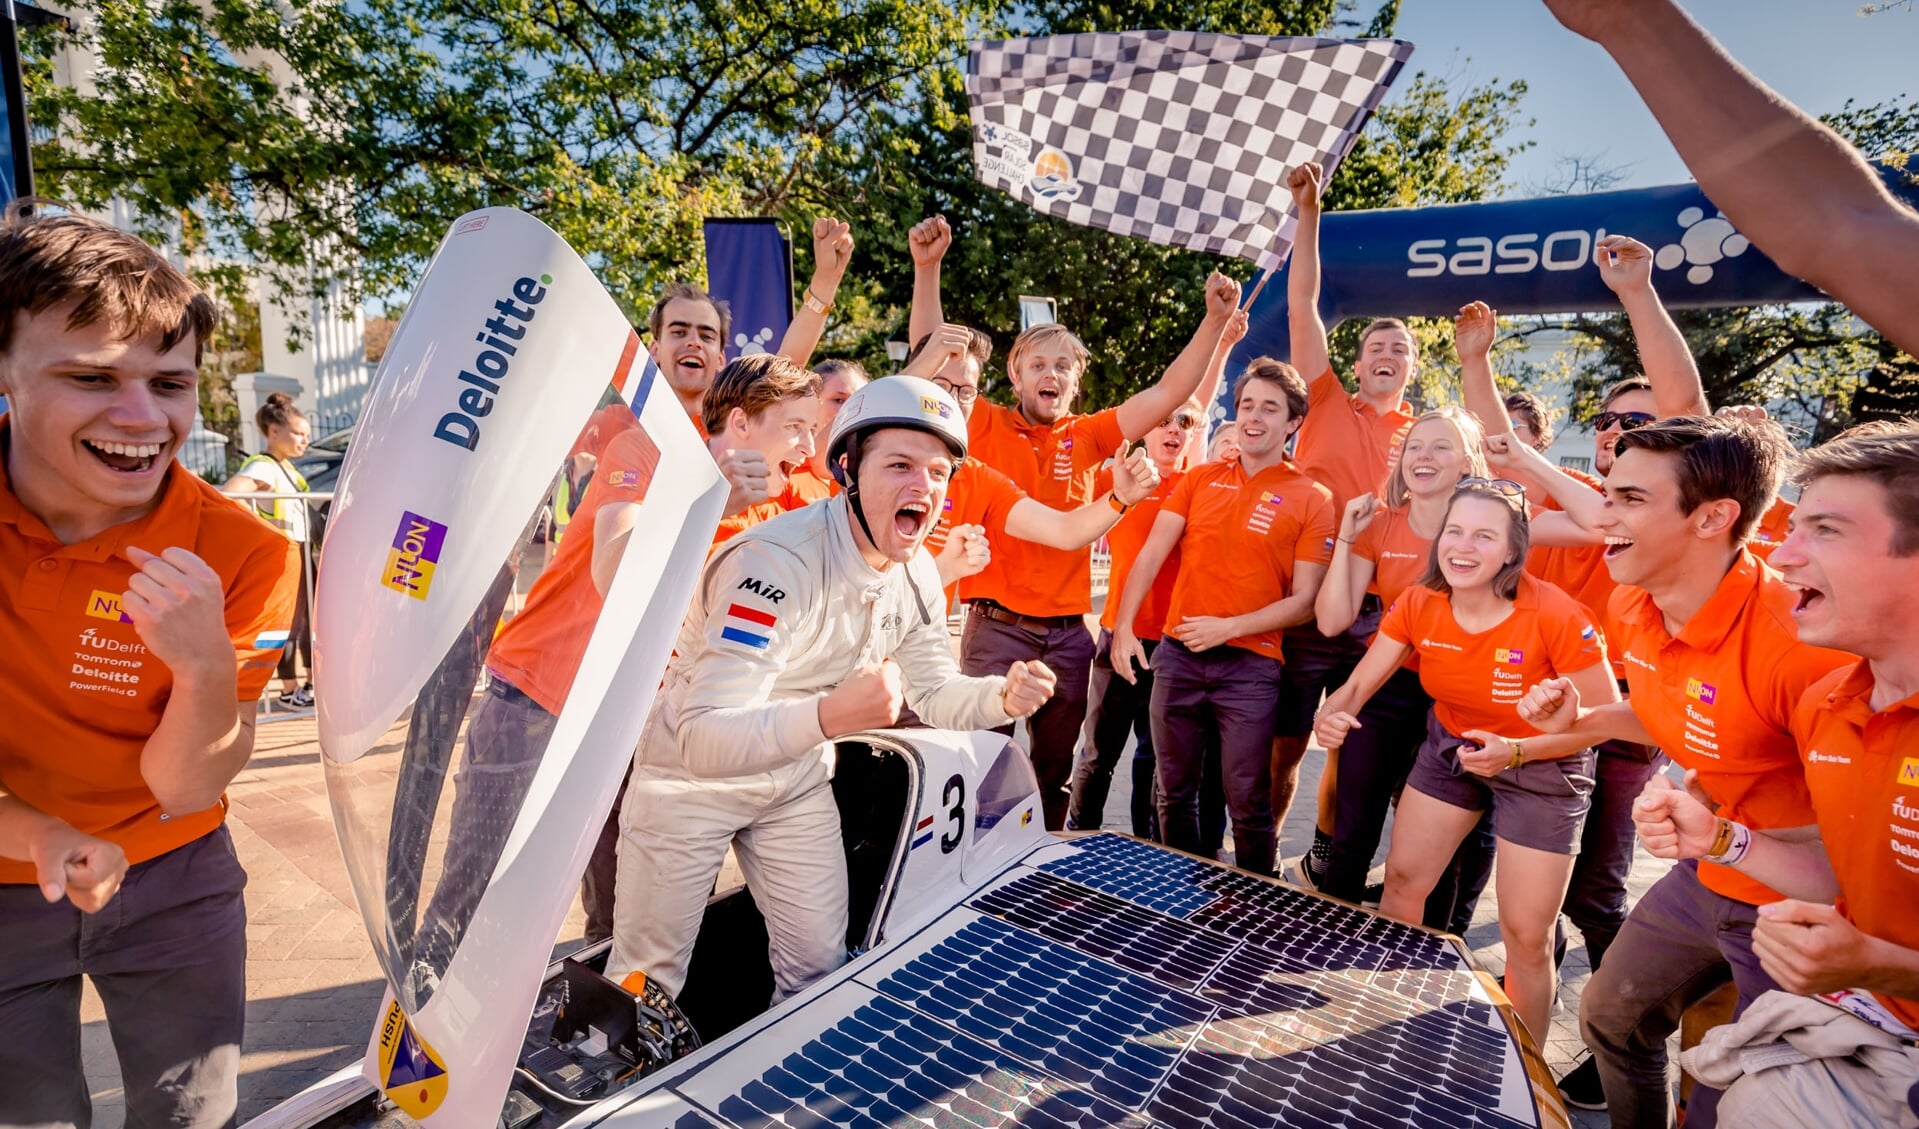 Nuna9s gaat als eerste over de finish van de Sasol Solar Challenge